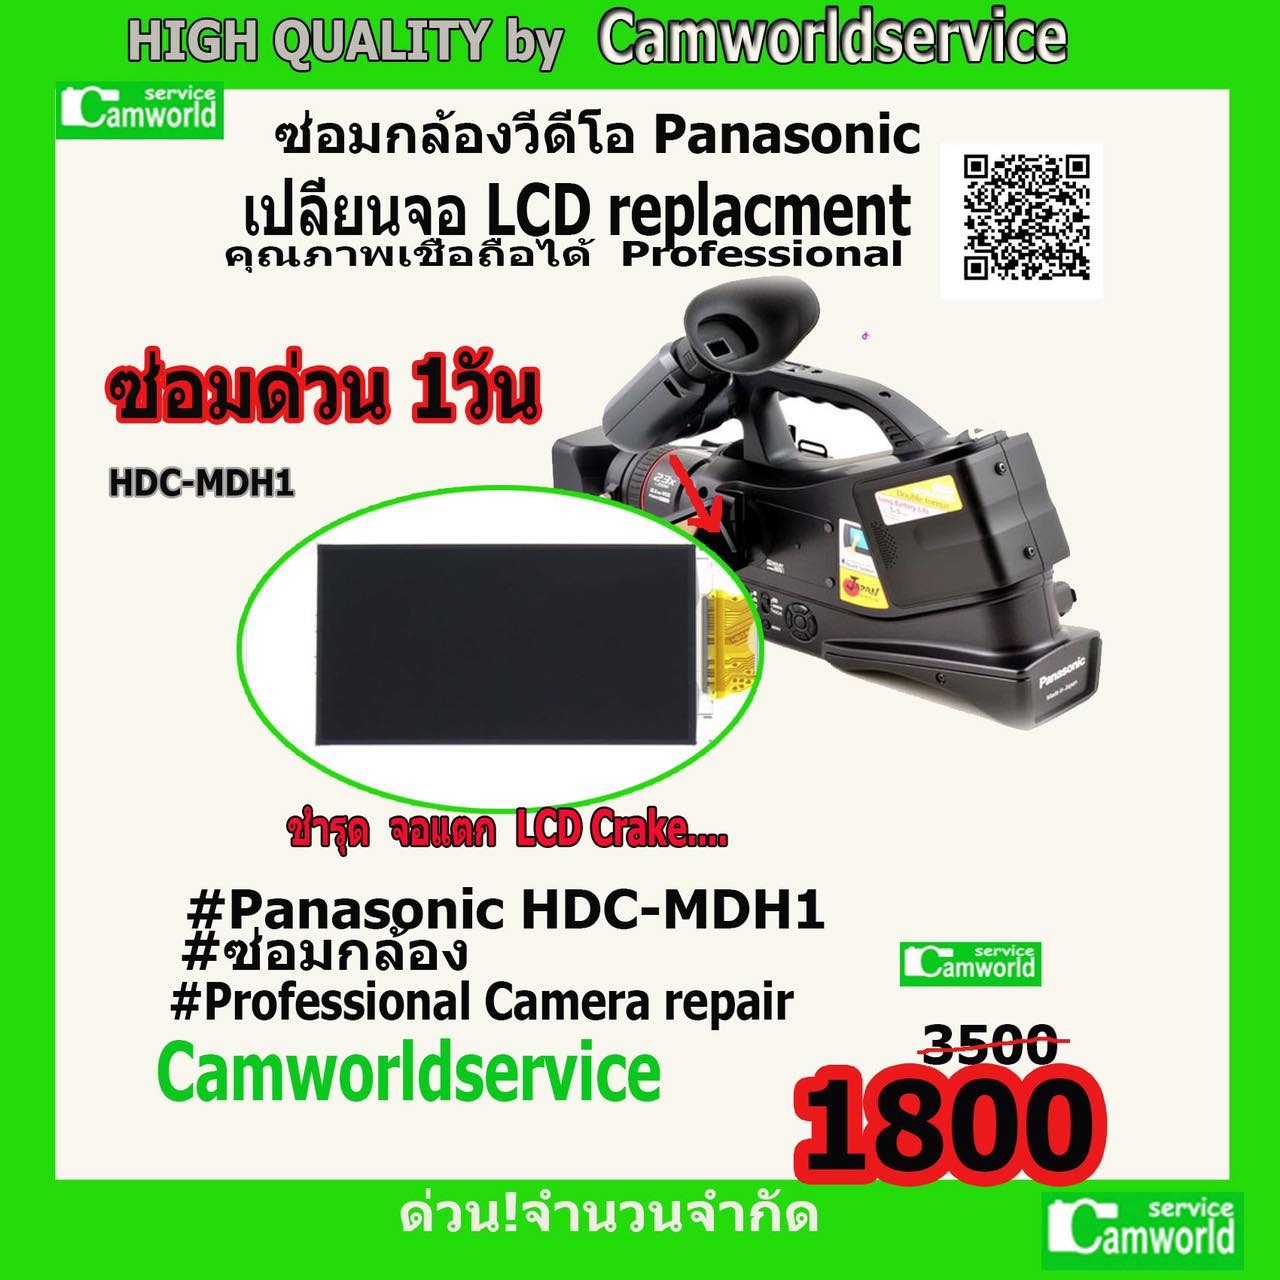 ซ่อมกล้อง เปลี่ยนจอ LCD for Panasonic HDC-MDH1  ชำรุด จอแตก ขอบจอดำ... ซ่อมด่วน 1 วัน คุณภาพเชื่อถือได้ ค่าแรงใส่ให้ฟรี!